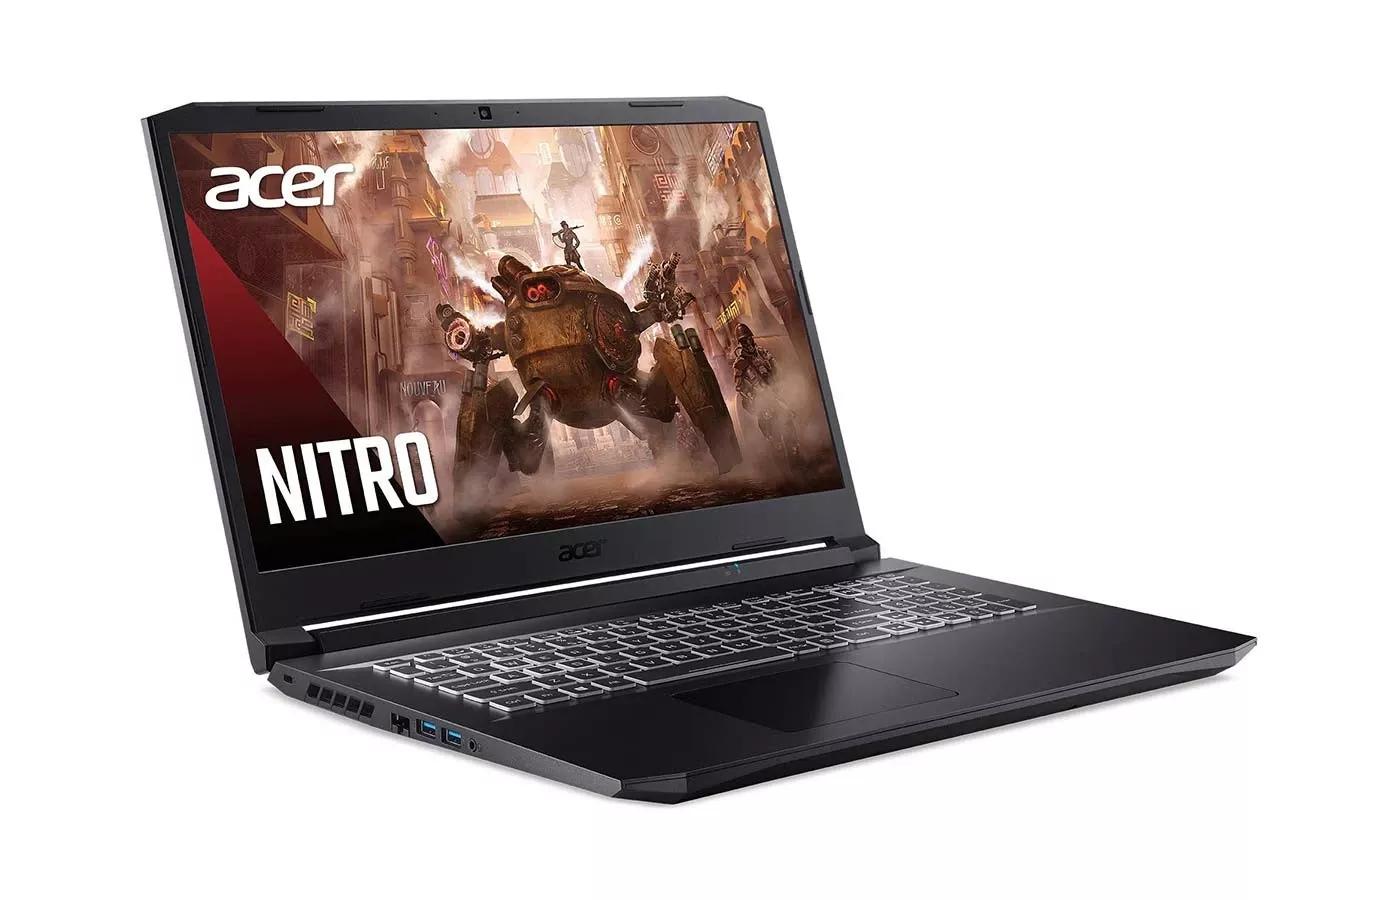 Acer Nitro 5 (2020) Review